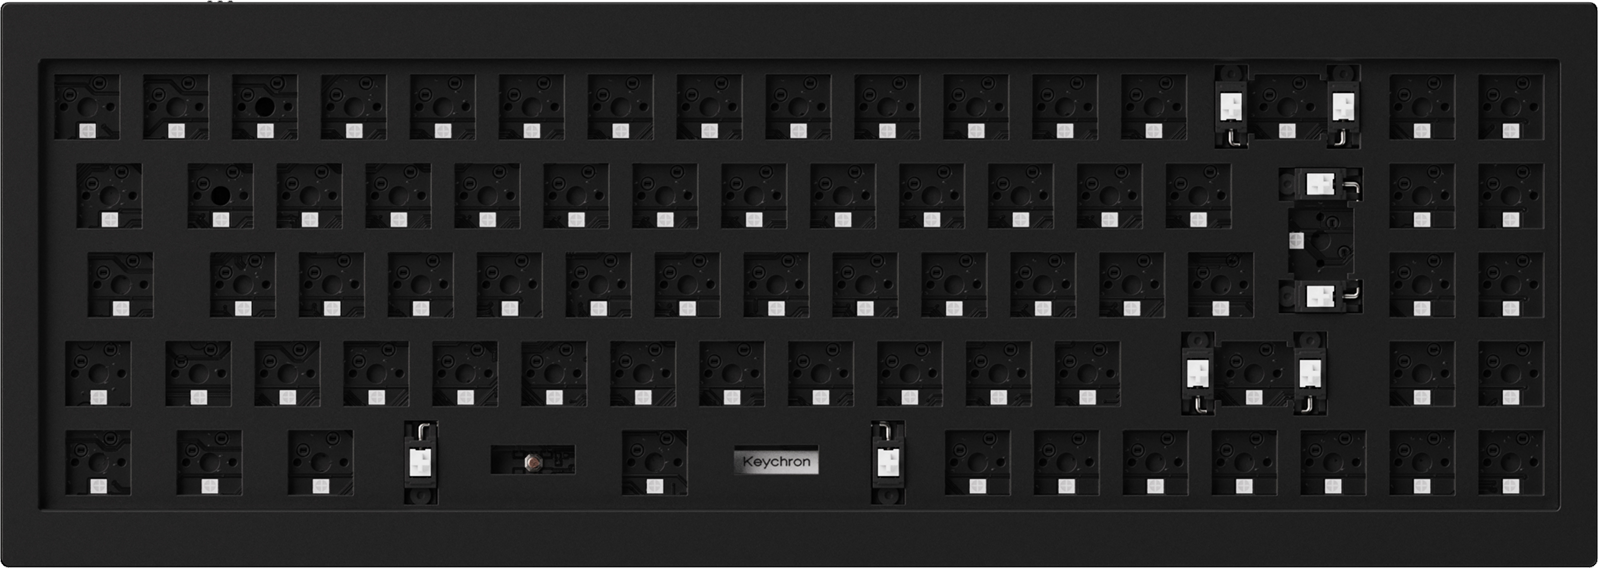 Barebone ANSI Layout Keychron Q8 65% Alice Layout Custom Mechanical Keyboard